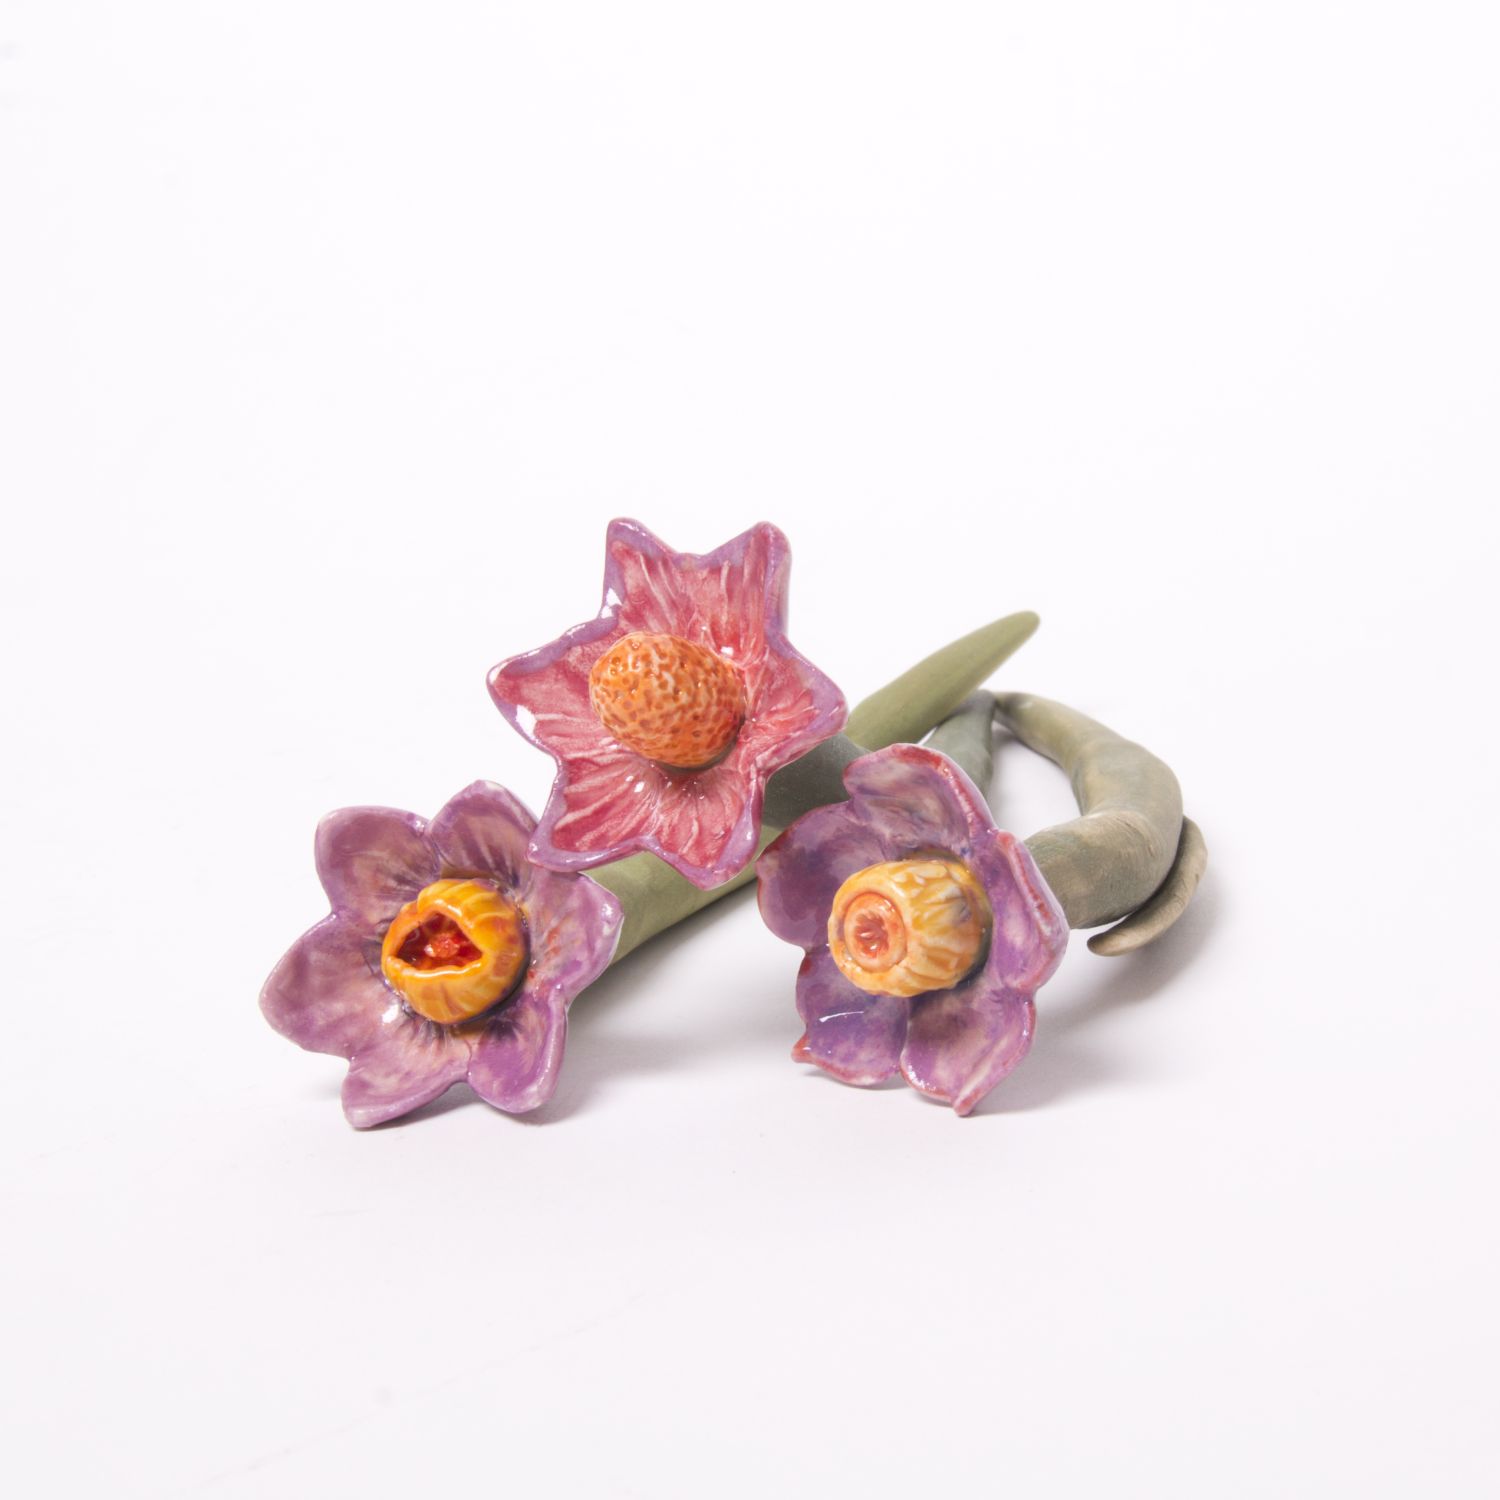 Eekta Trienekens: Narcissus Flowers (Each sold separately) Product Image 5 of 7